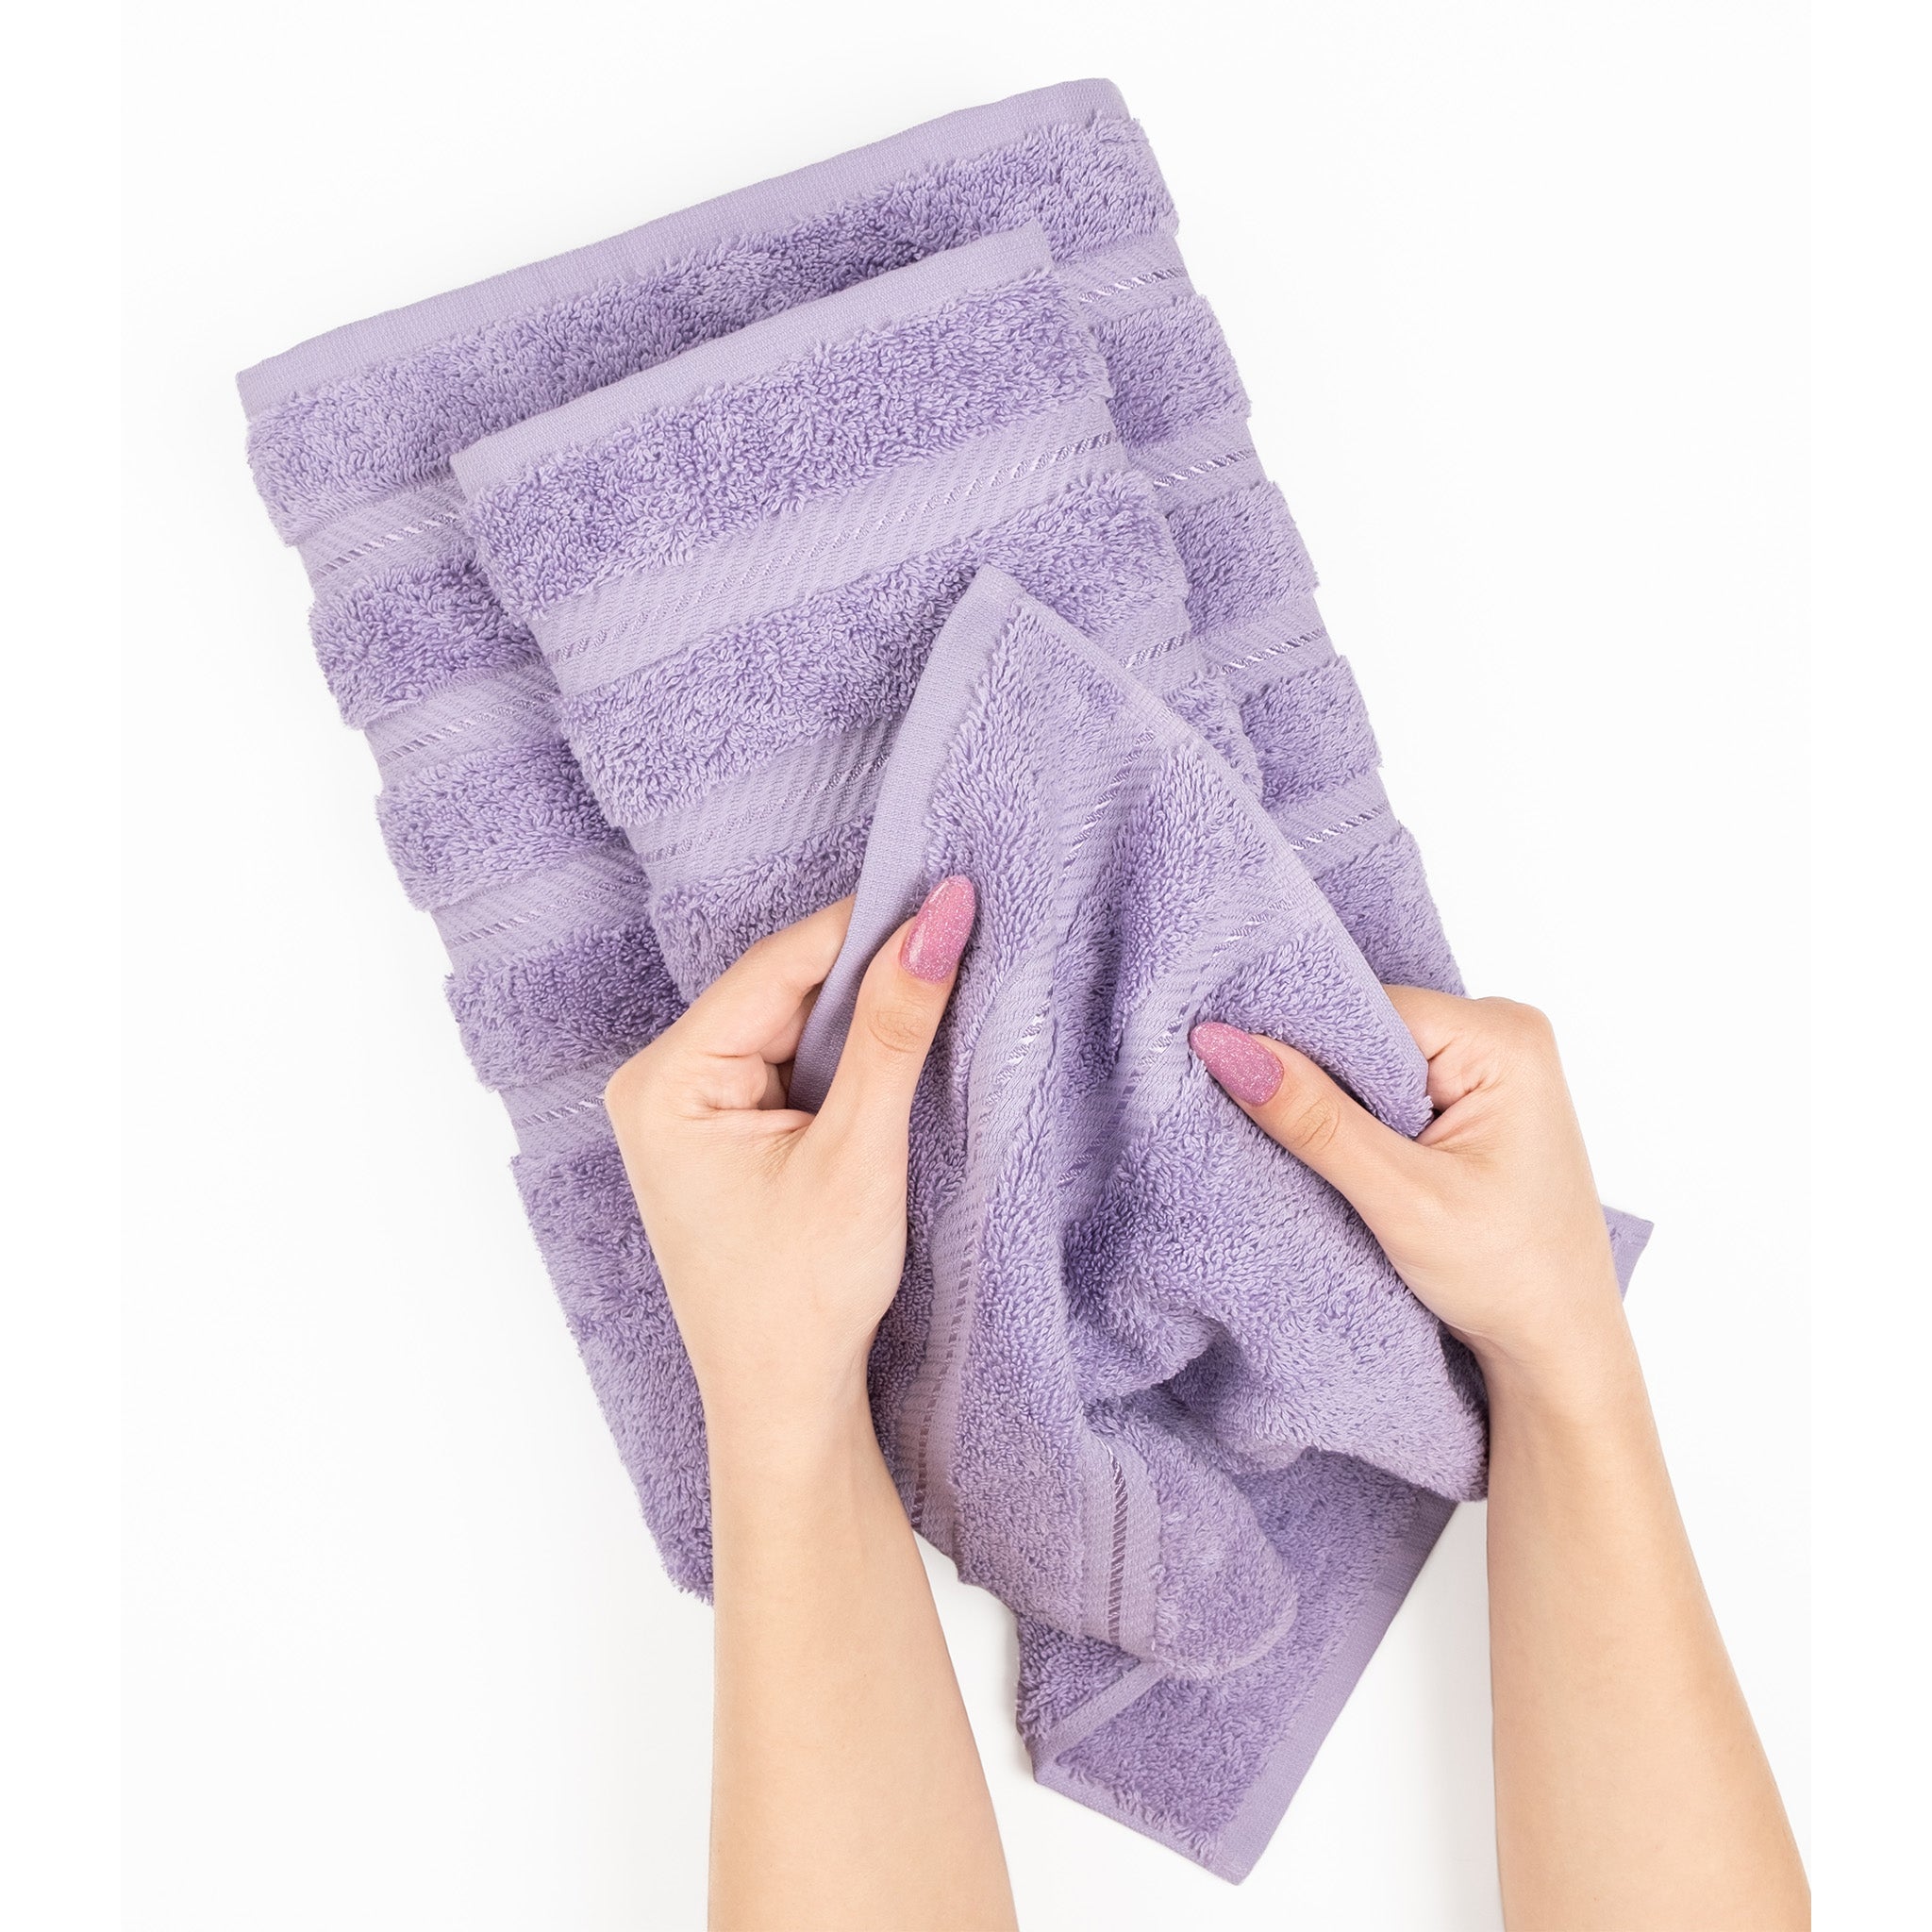 American Soft Linen 100% Turkish Cotton 6 Piece Towel Set Wholesale lilac-5